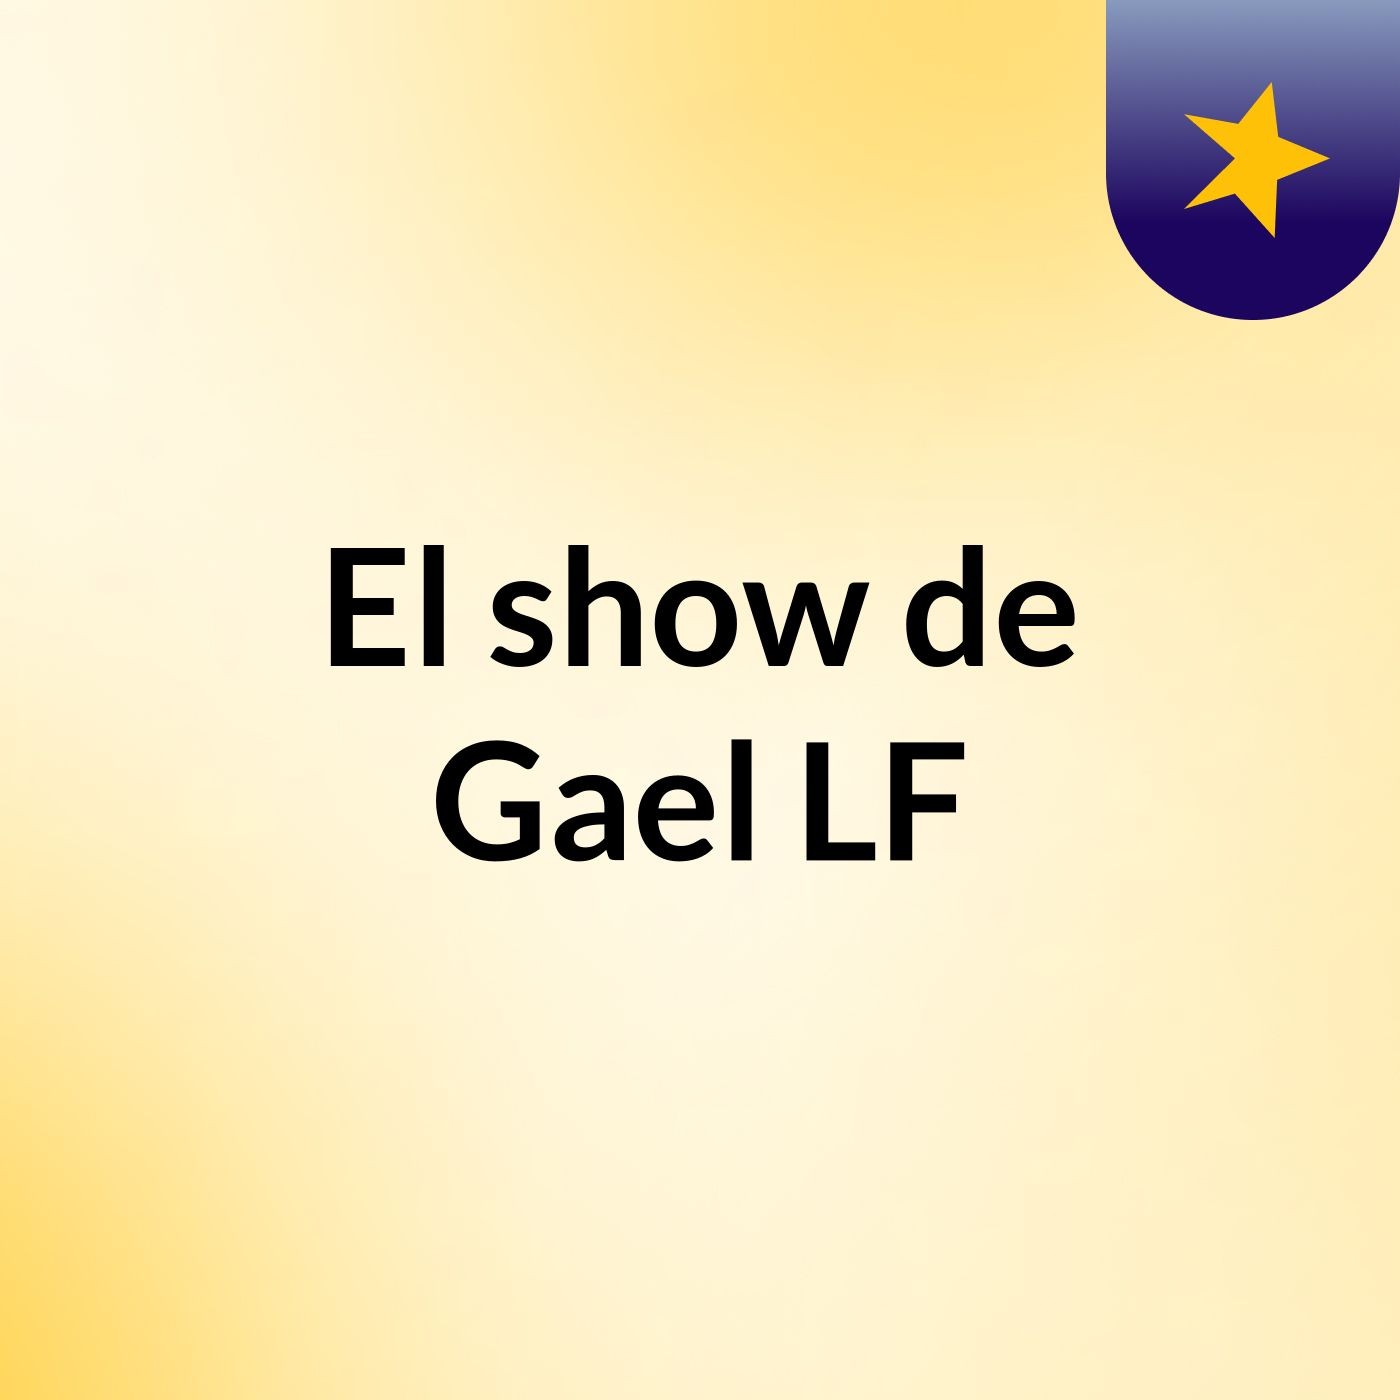 Episodio 4 - El show de Gael LF